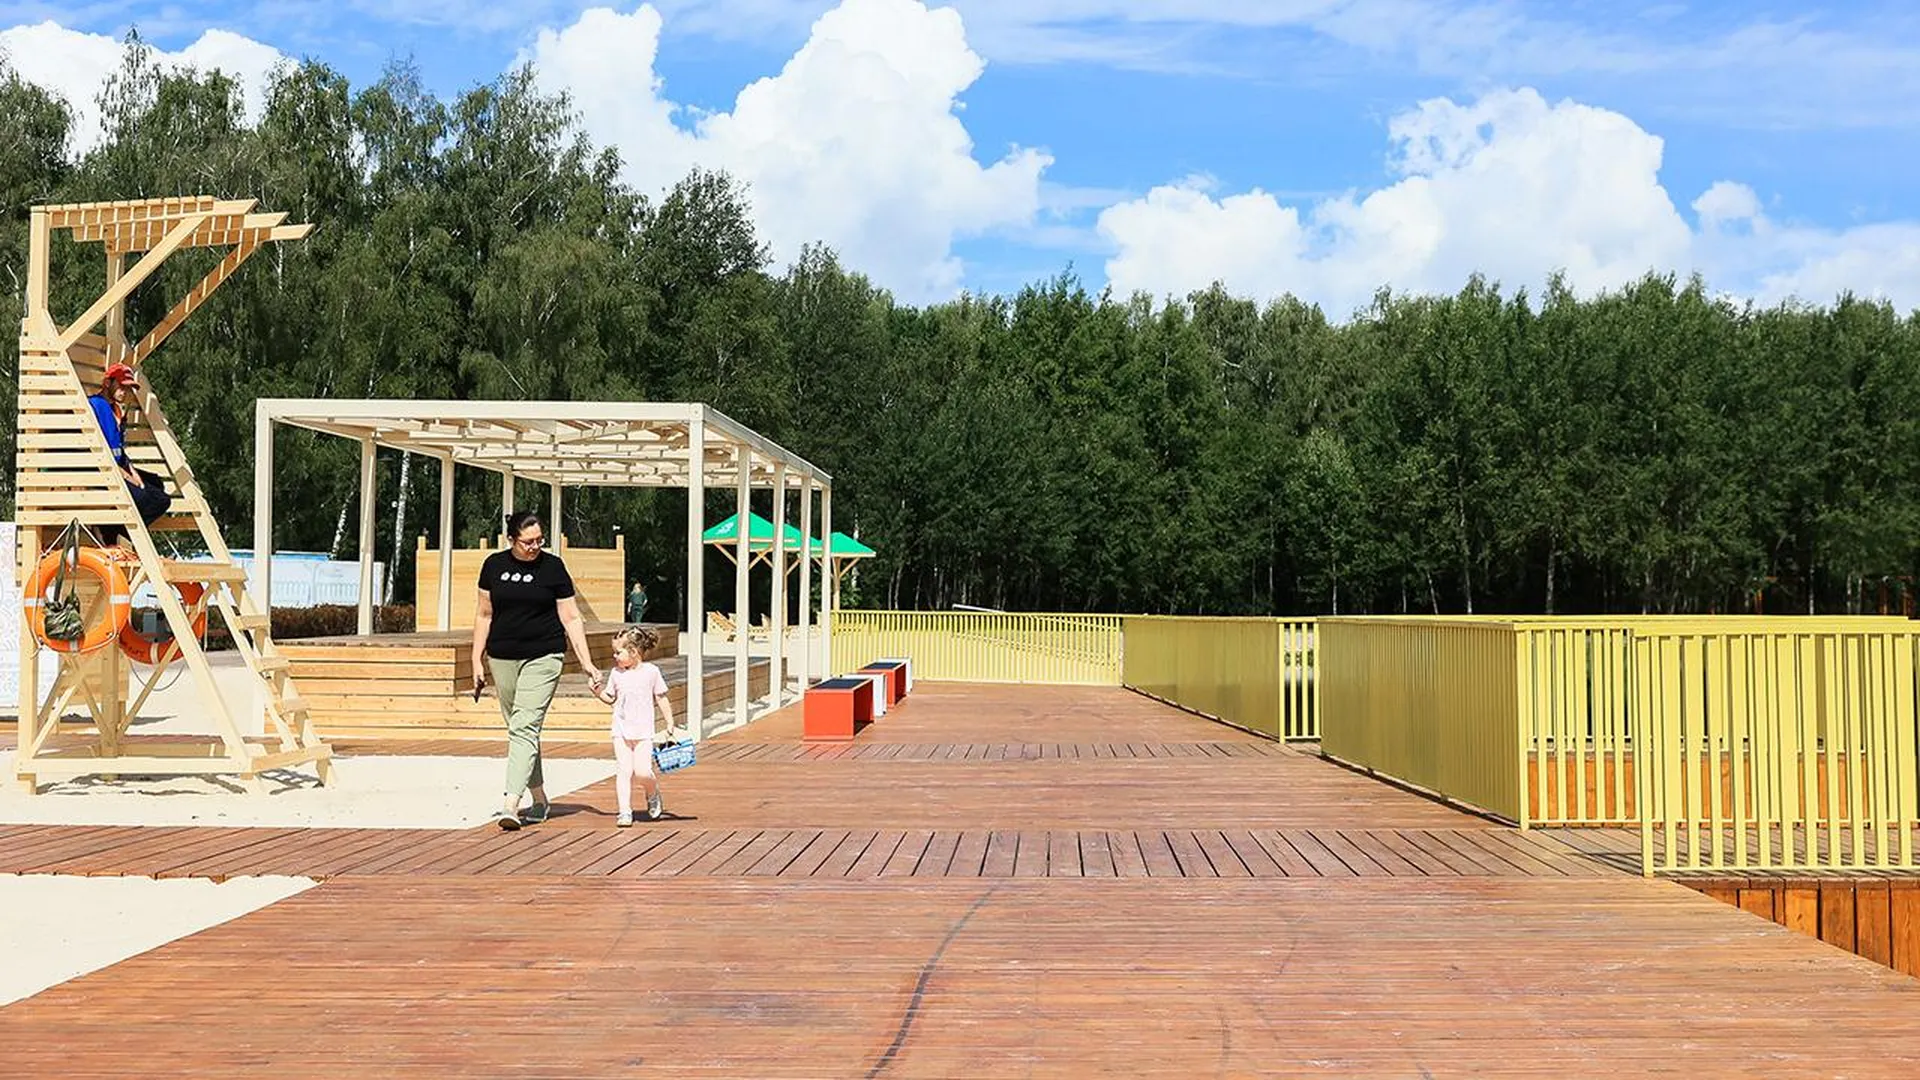 Завтра в Домодедове откроется новый парк «Взлет», рассказываем как устроено общественное пространство